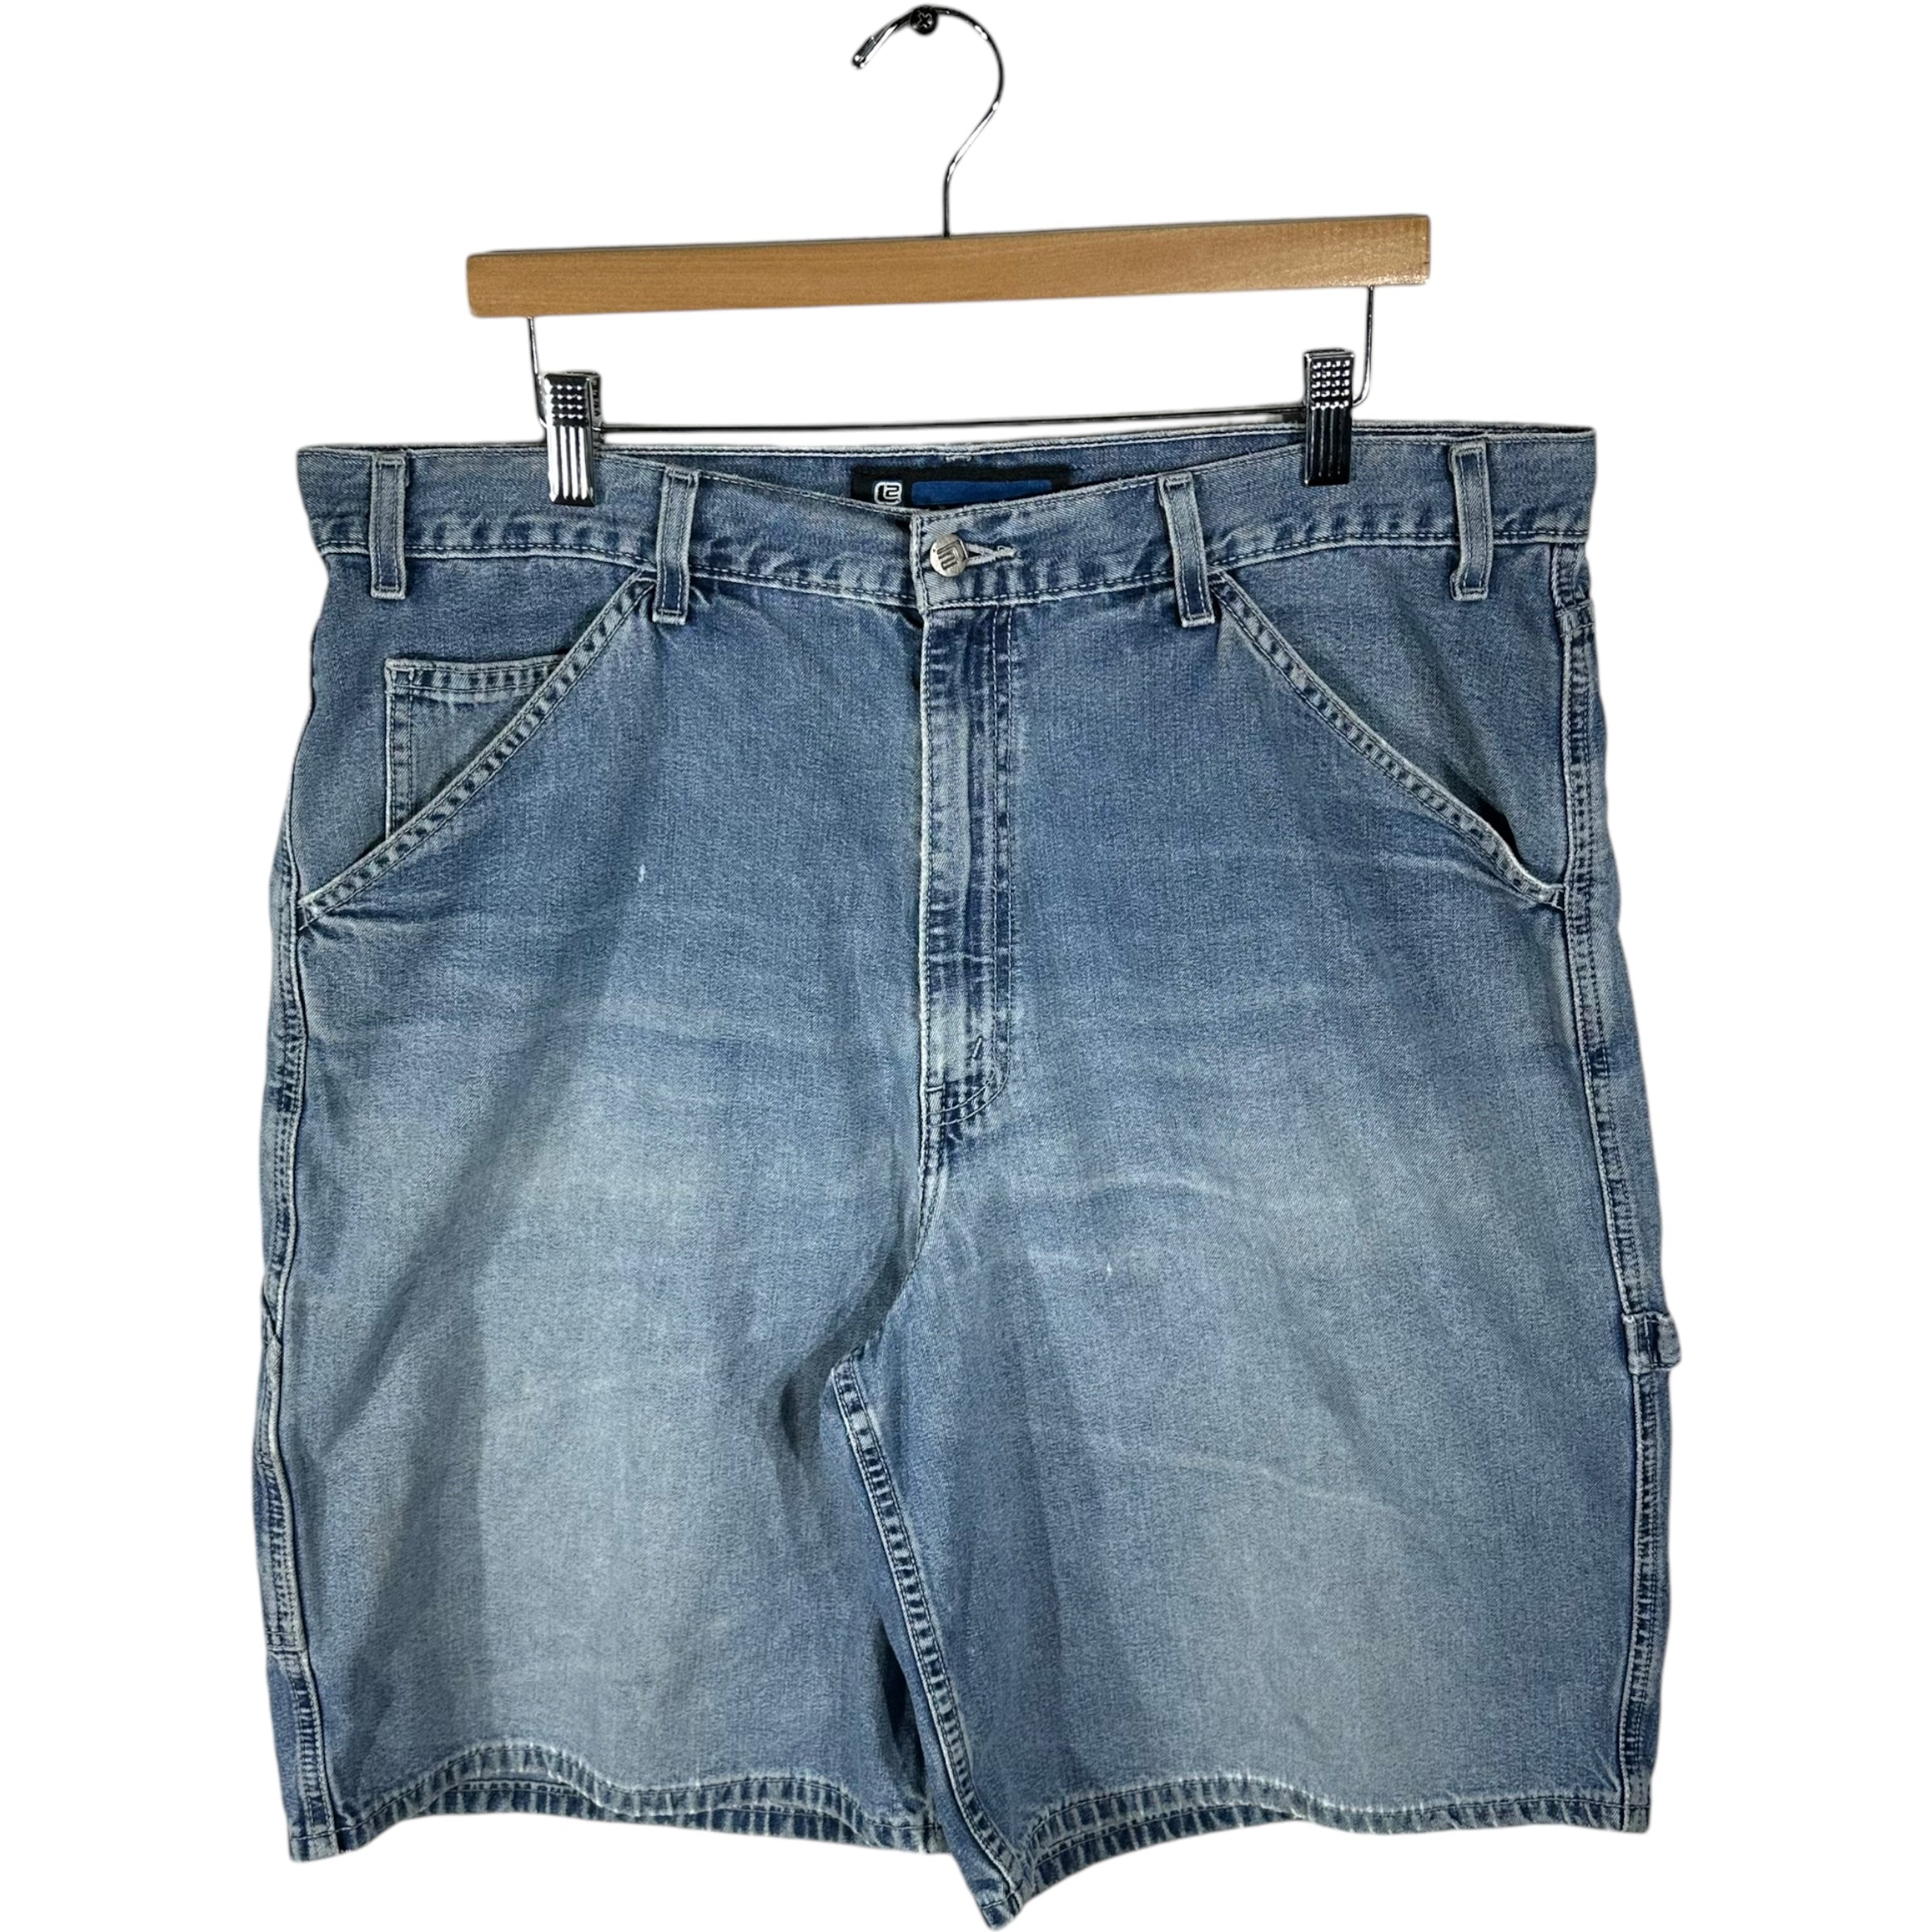 Vintage Levis Carpenter Jean Shorts